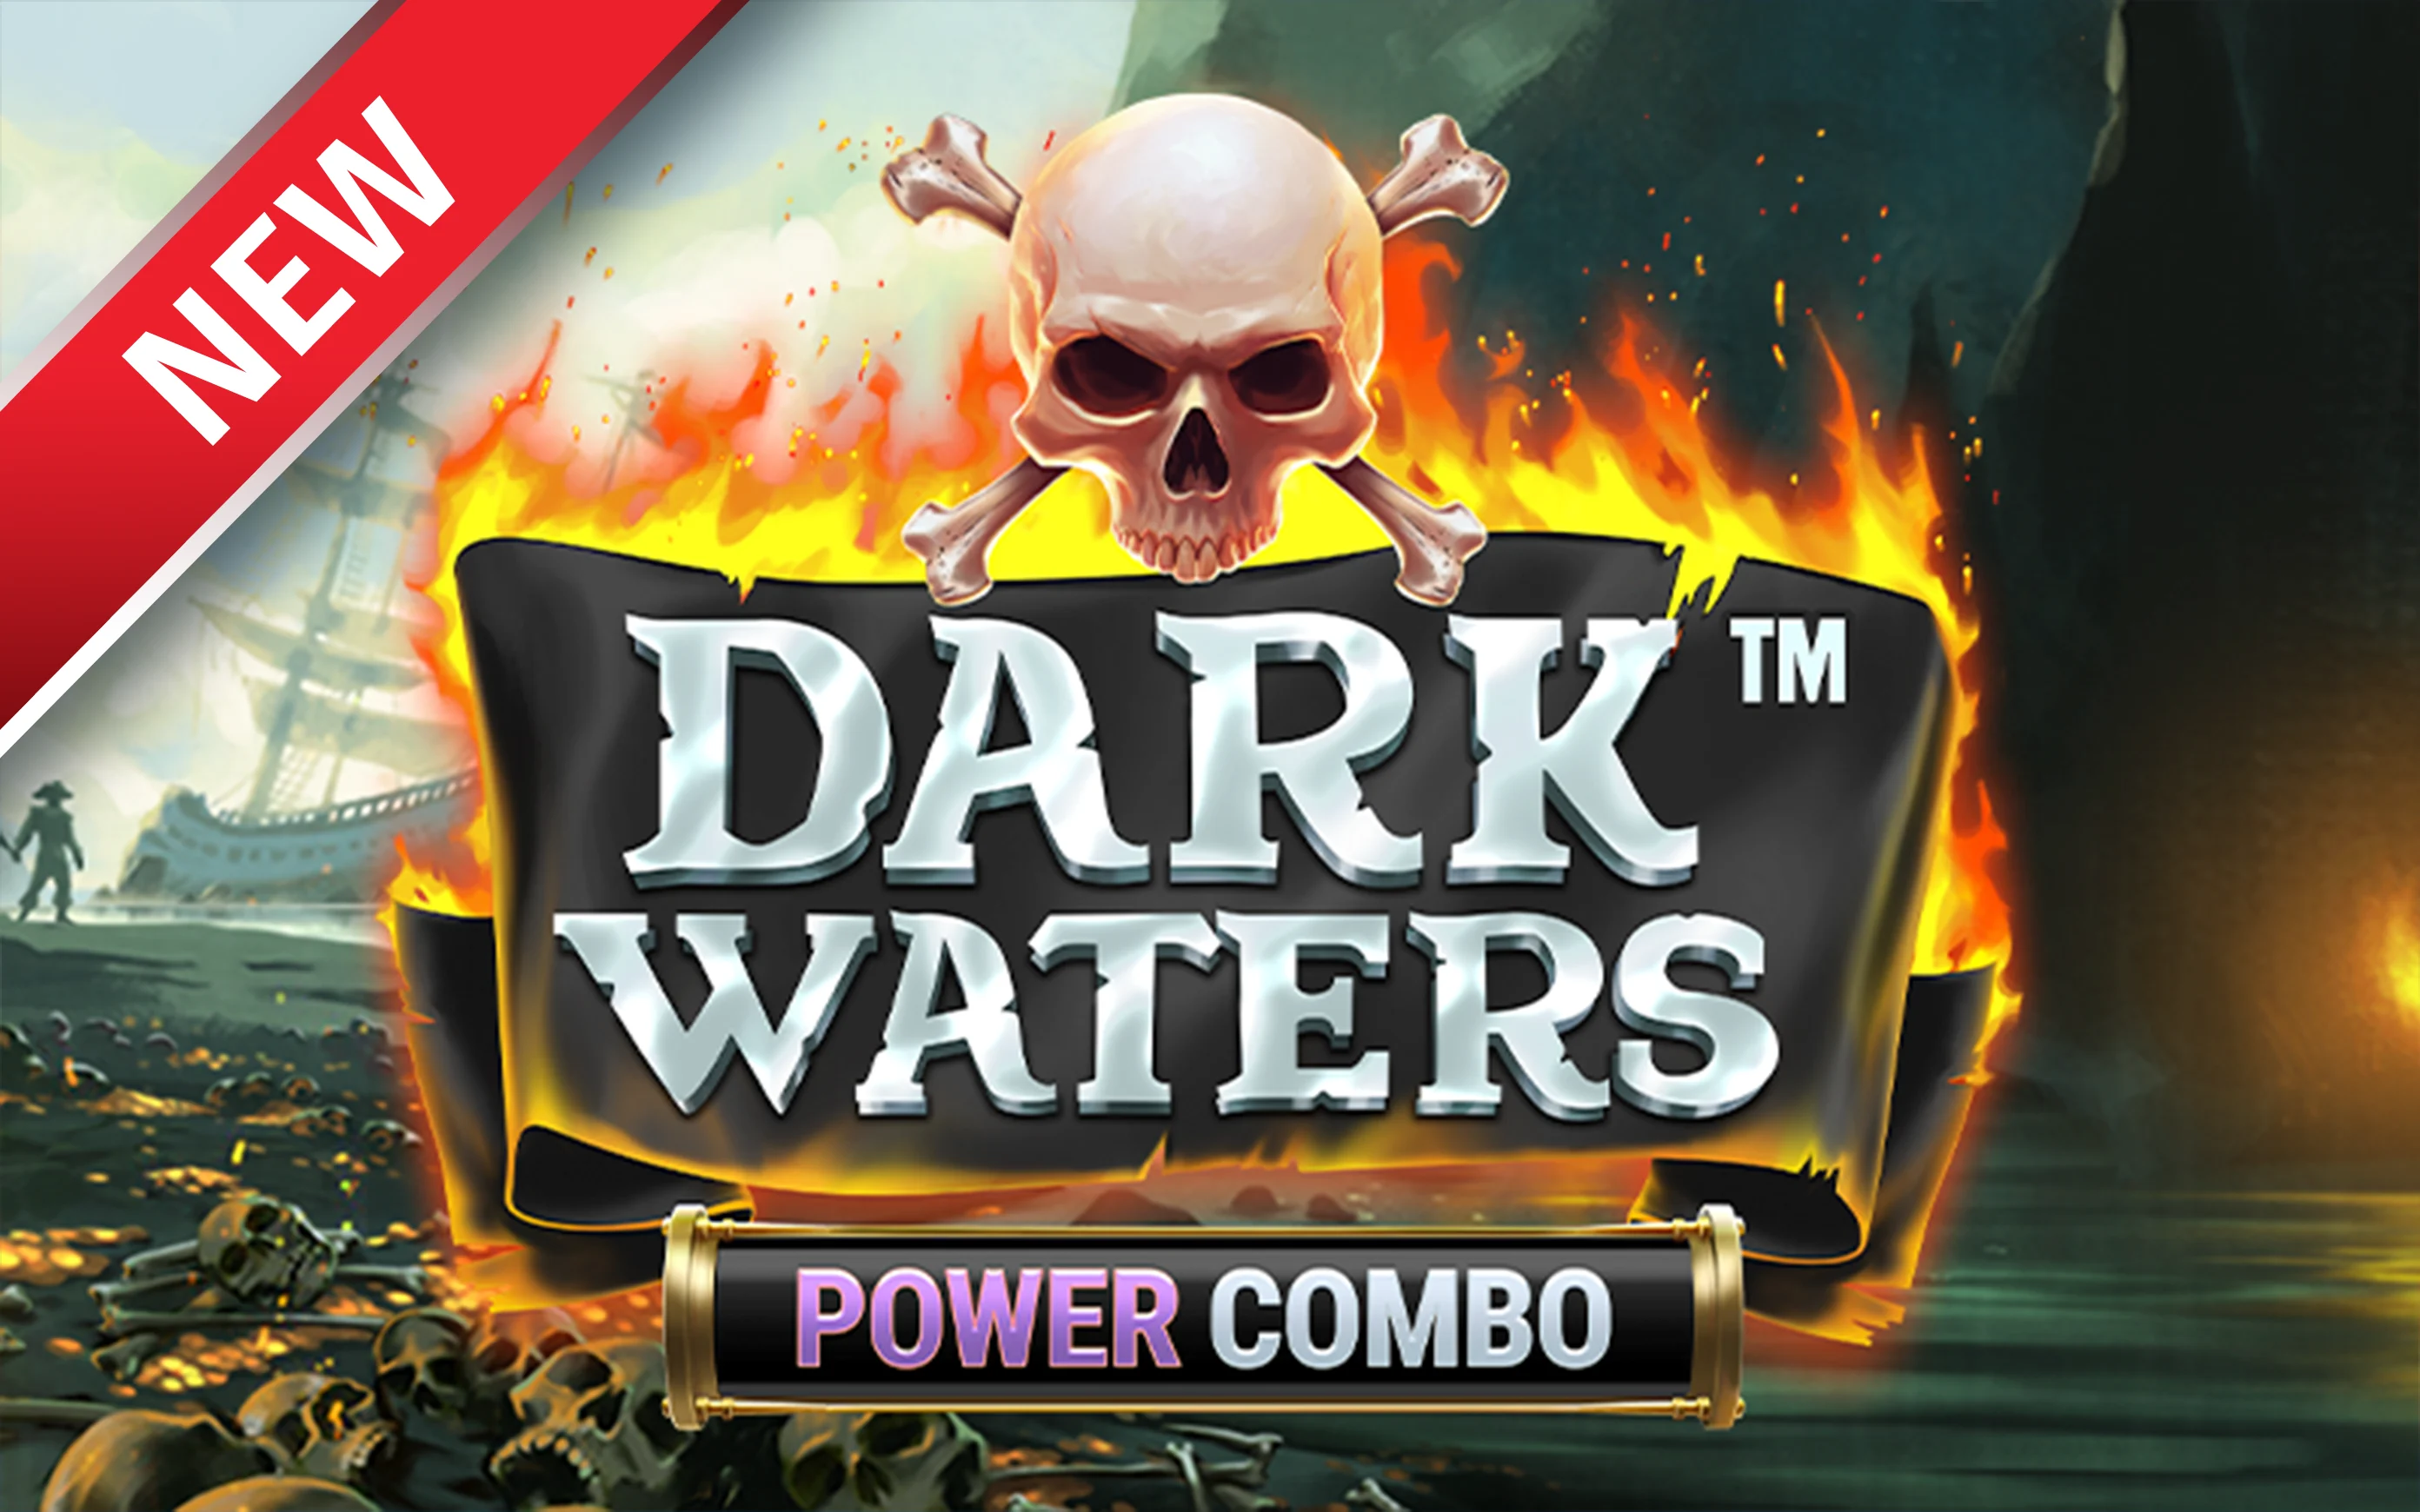 Play Dark Waters Power Combo™ on Starcasino.be online casino